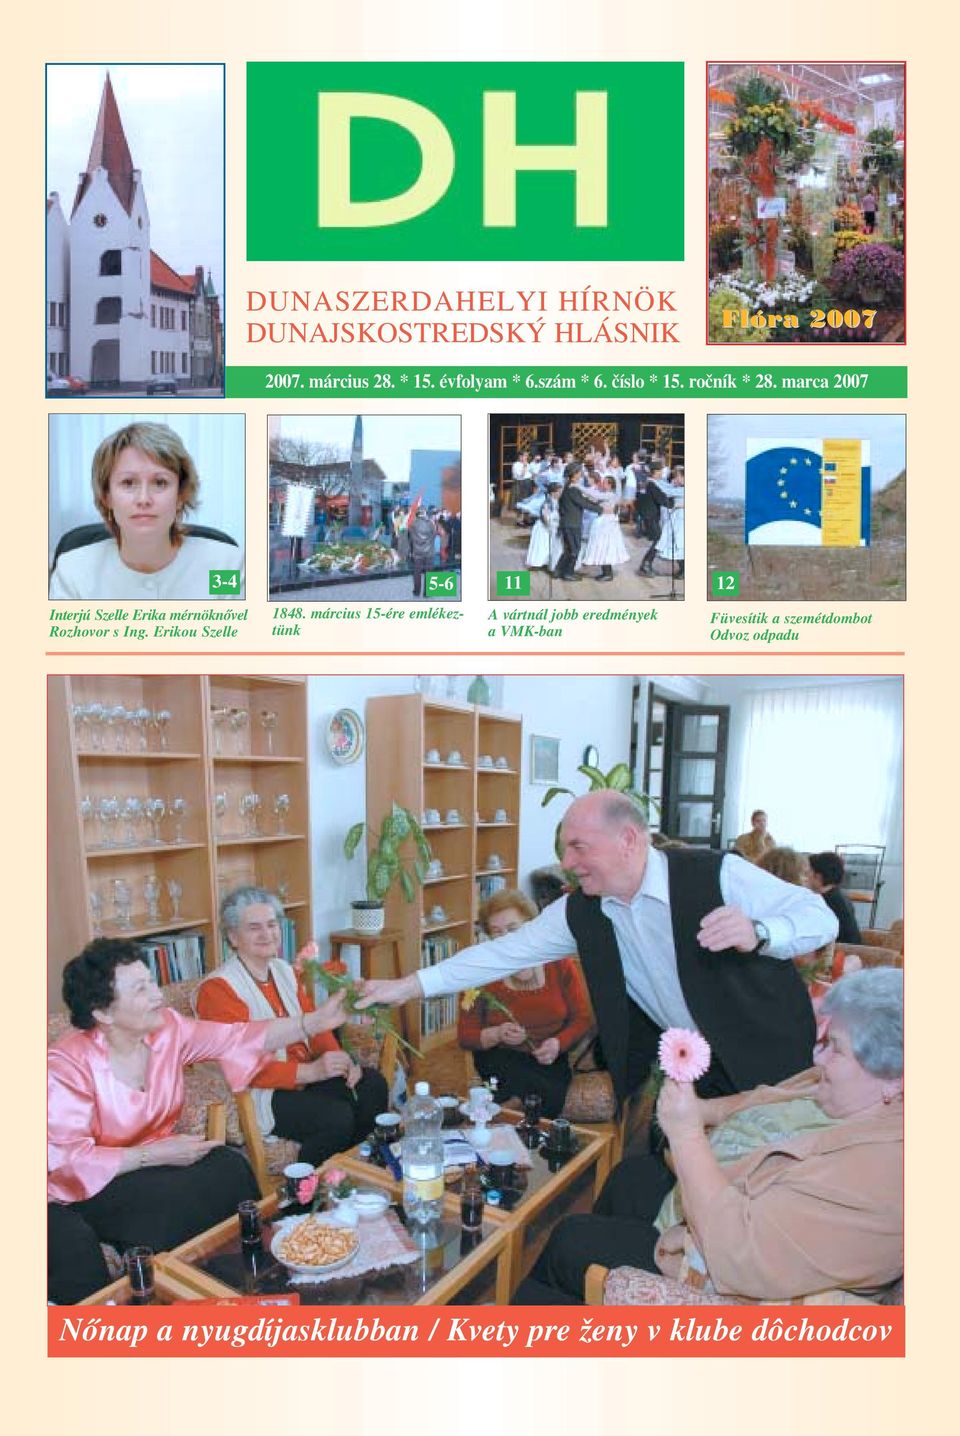 marca 2007 3 4 Interjú Szelle Erika mérnöknővel Rozhovor s Ing. Erikou Szelle 1848.